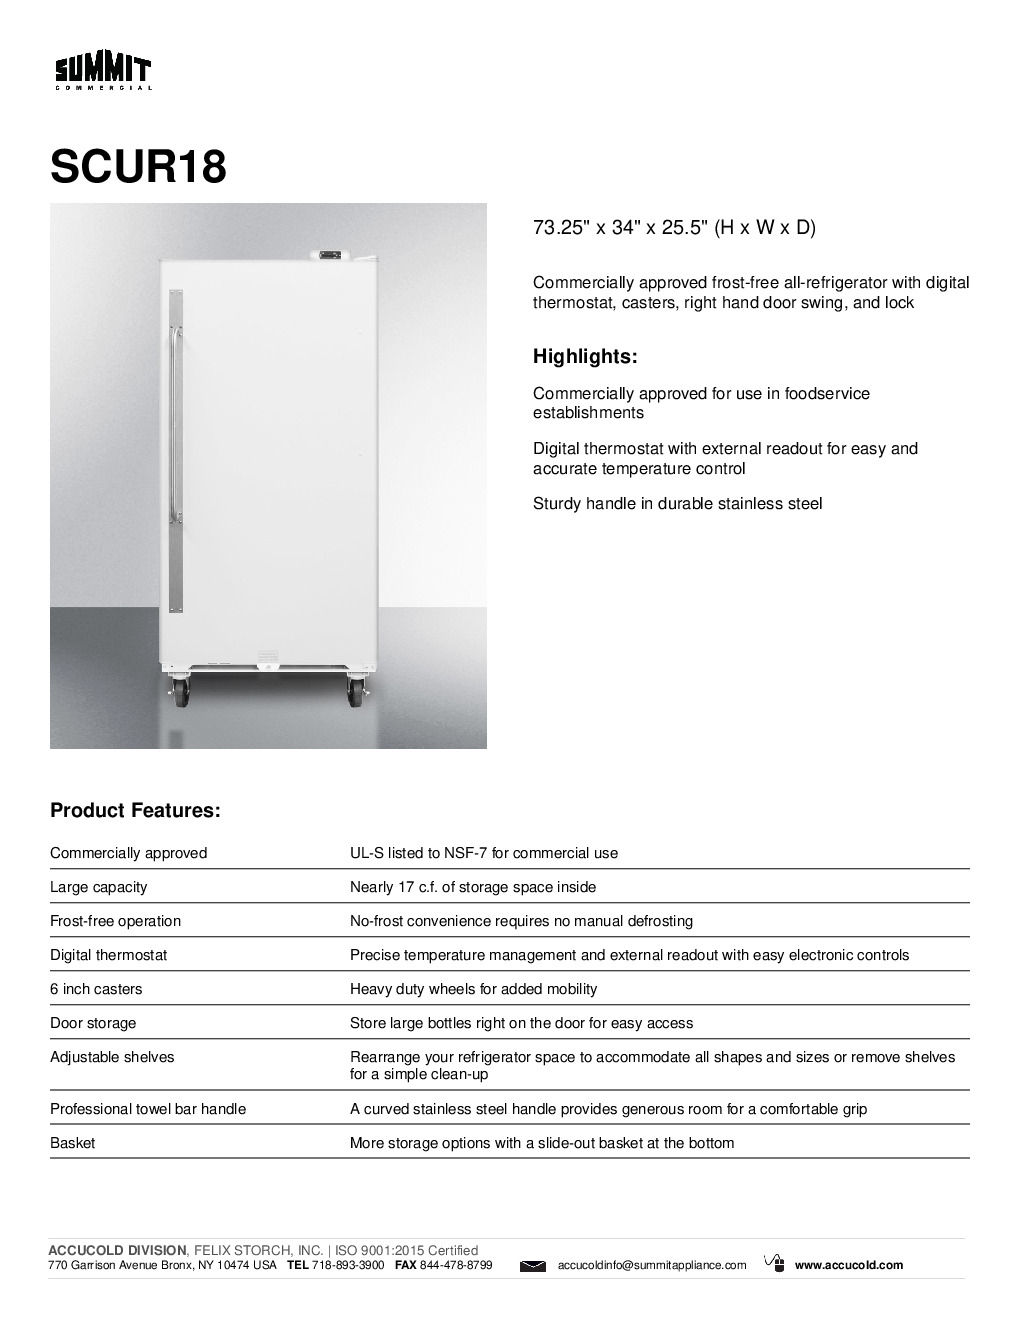 Summit SCUR18 Reach-In Refrigerator